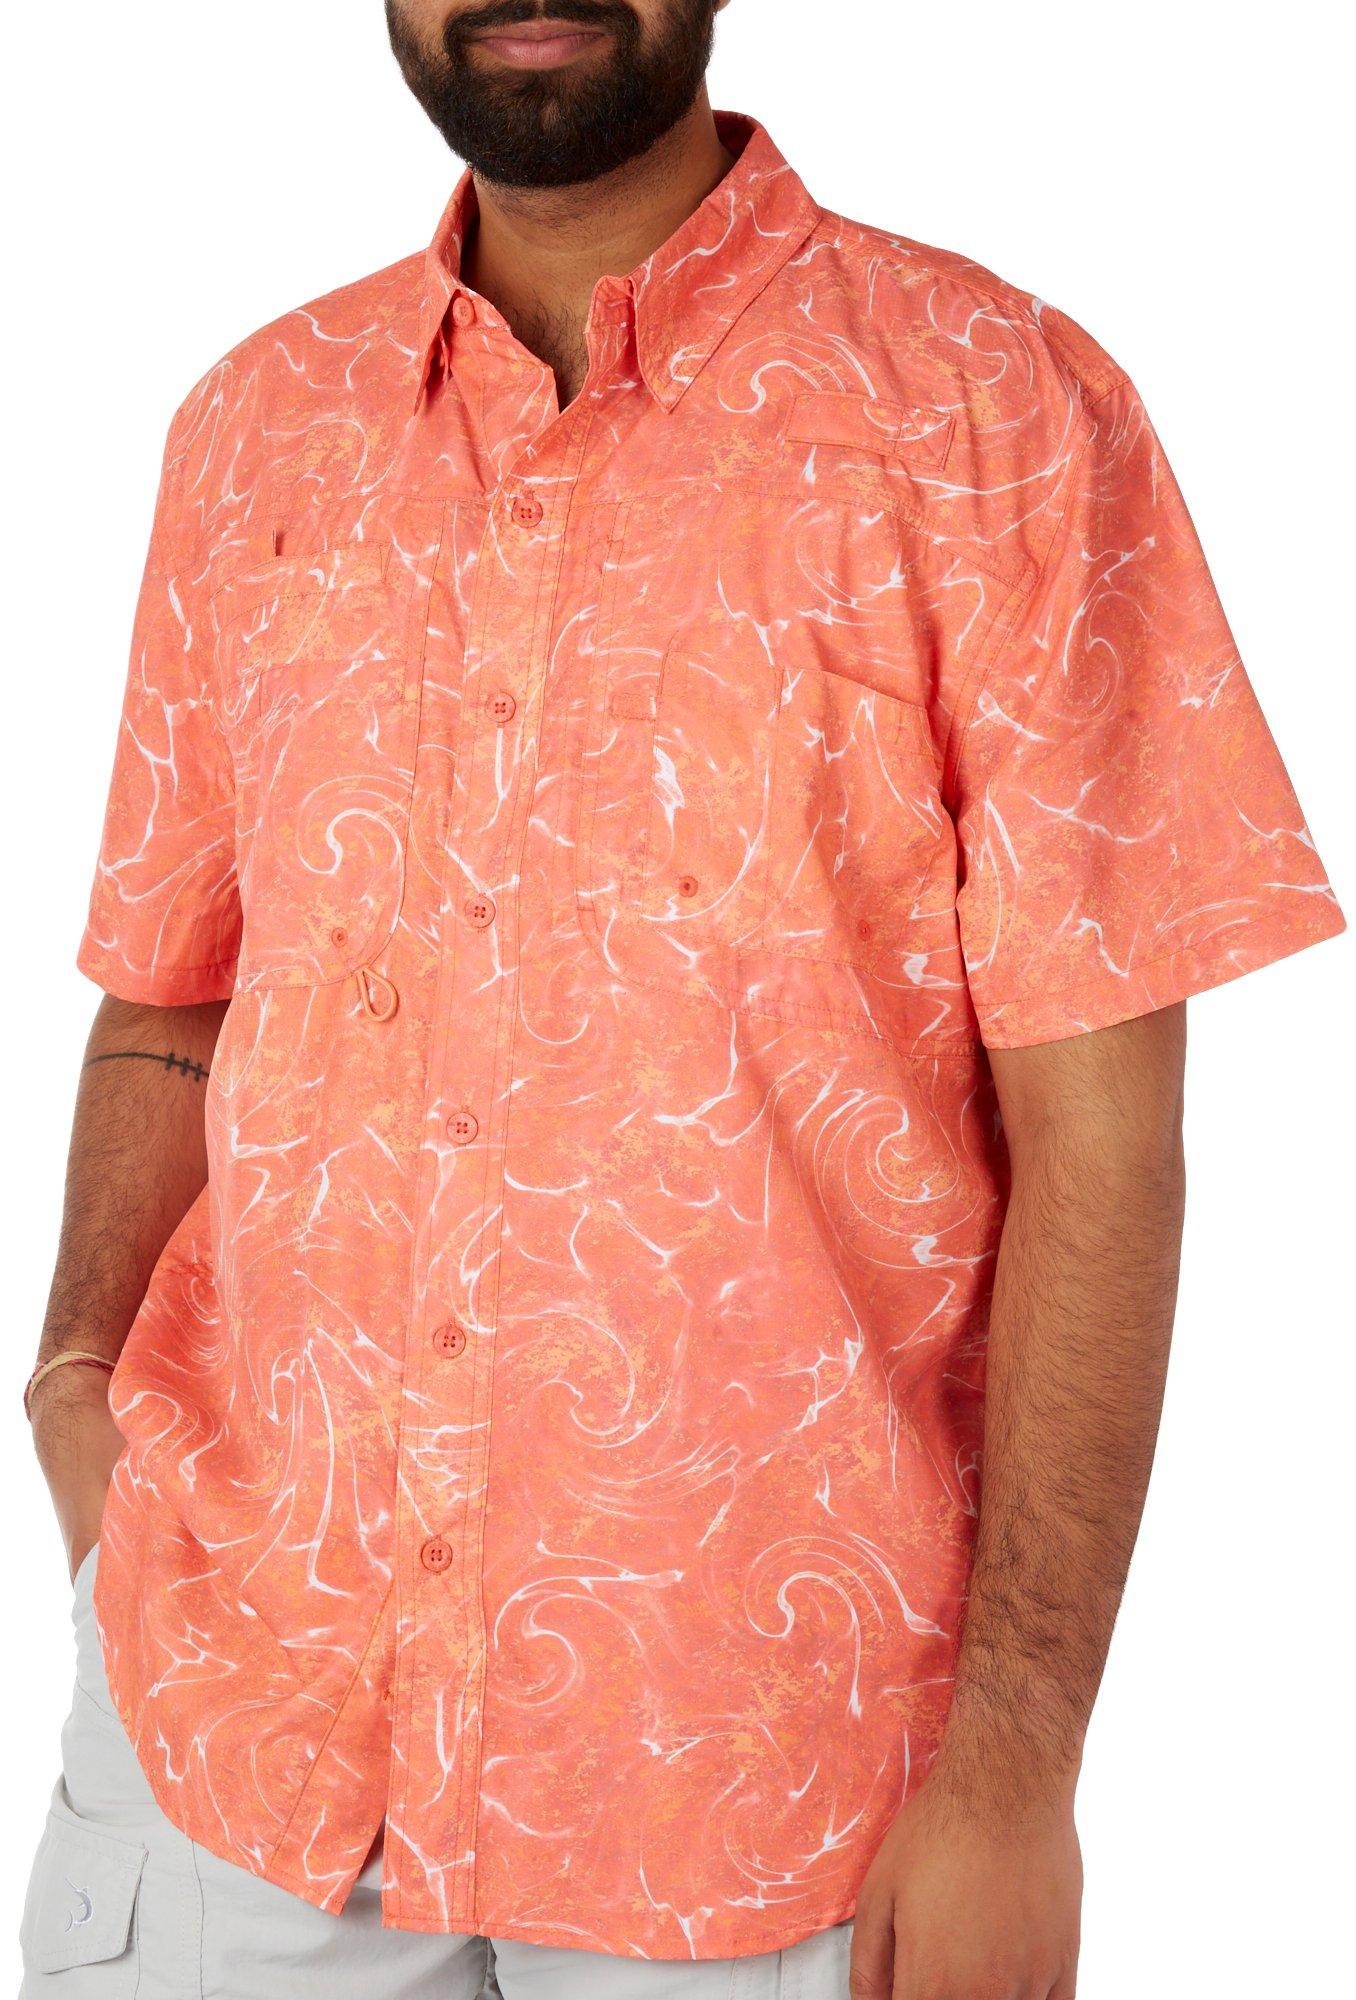 Orange Moisture Wicking Shirt